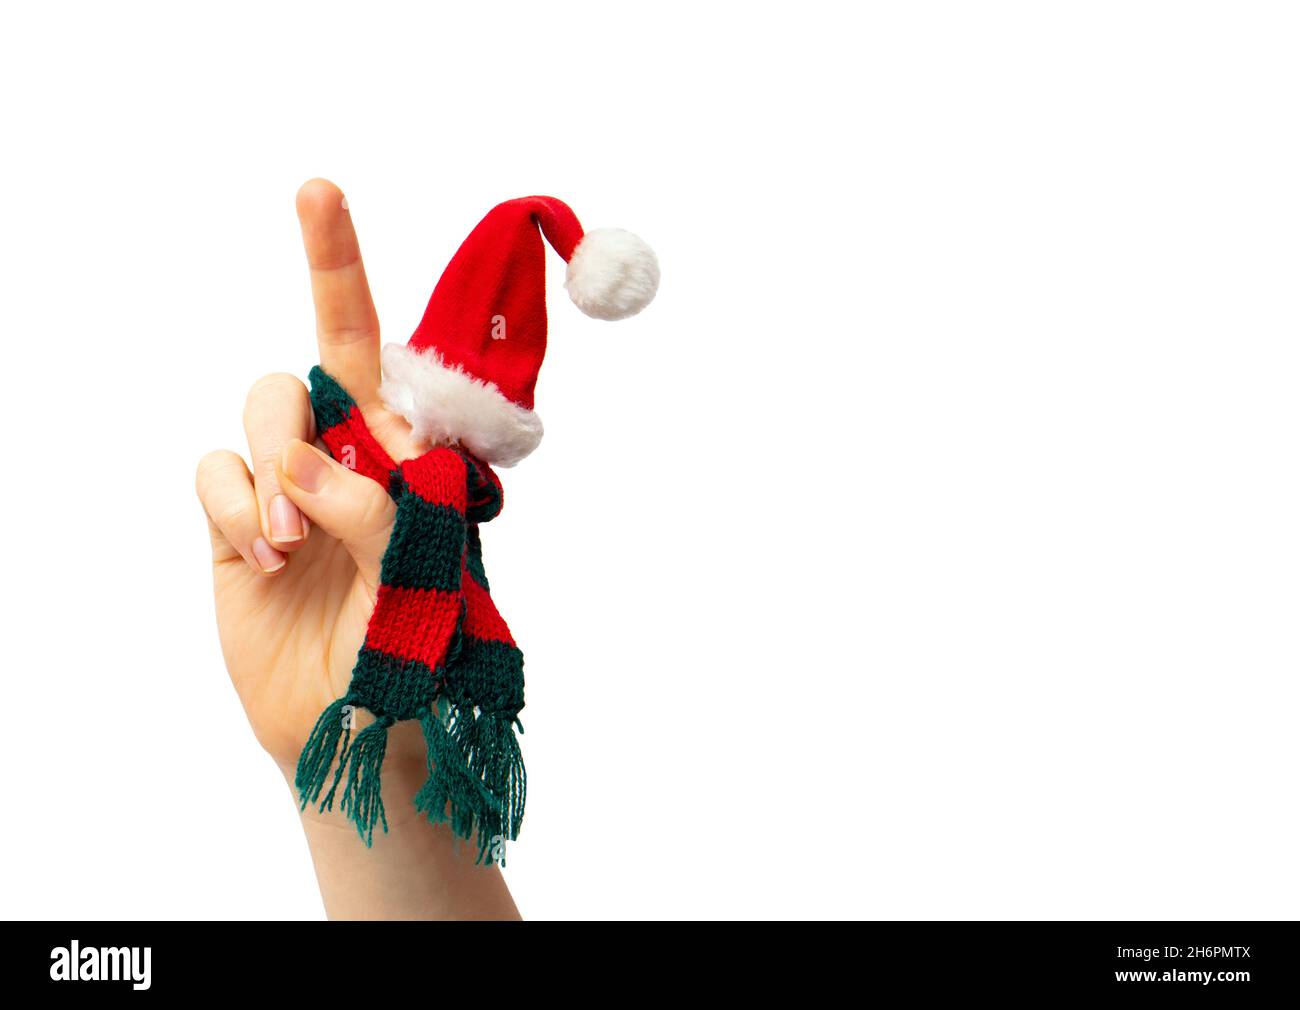 Vue rapprochée de la main isolée montre le geste de paix, tout en portant un chapeau de Noël et une écharpe tricotée rouge et verte.Beaucoup d'espace de copie. Banque D'Images